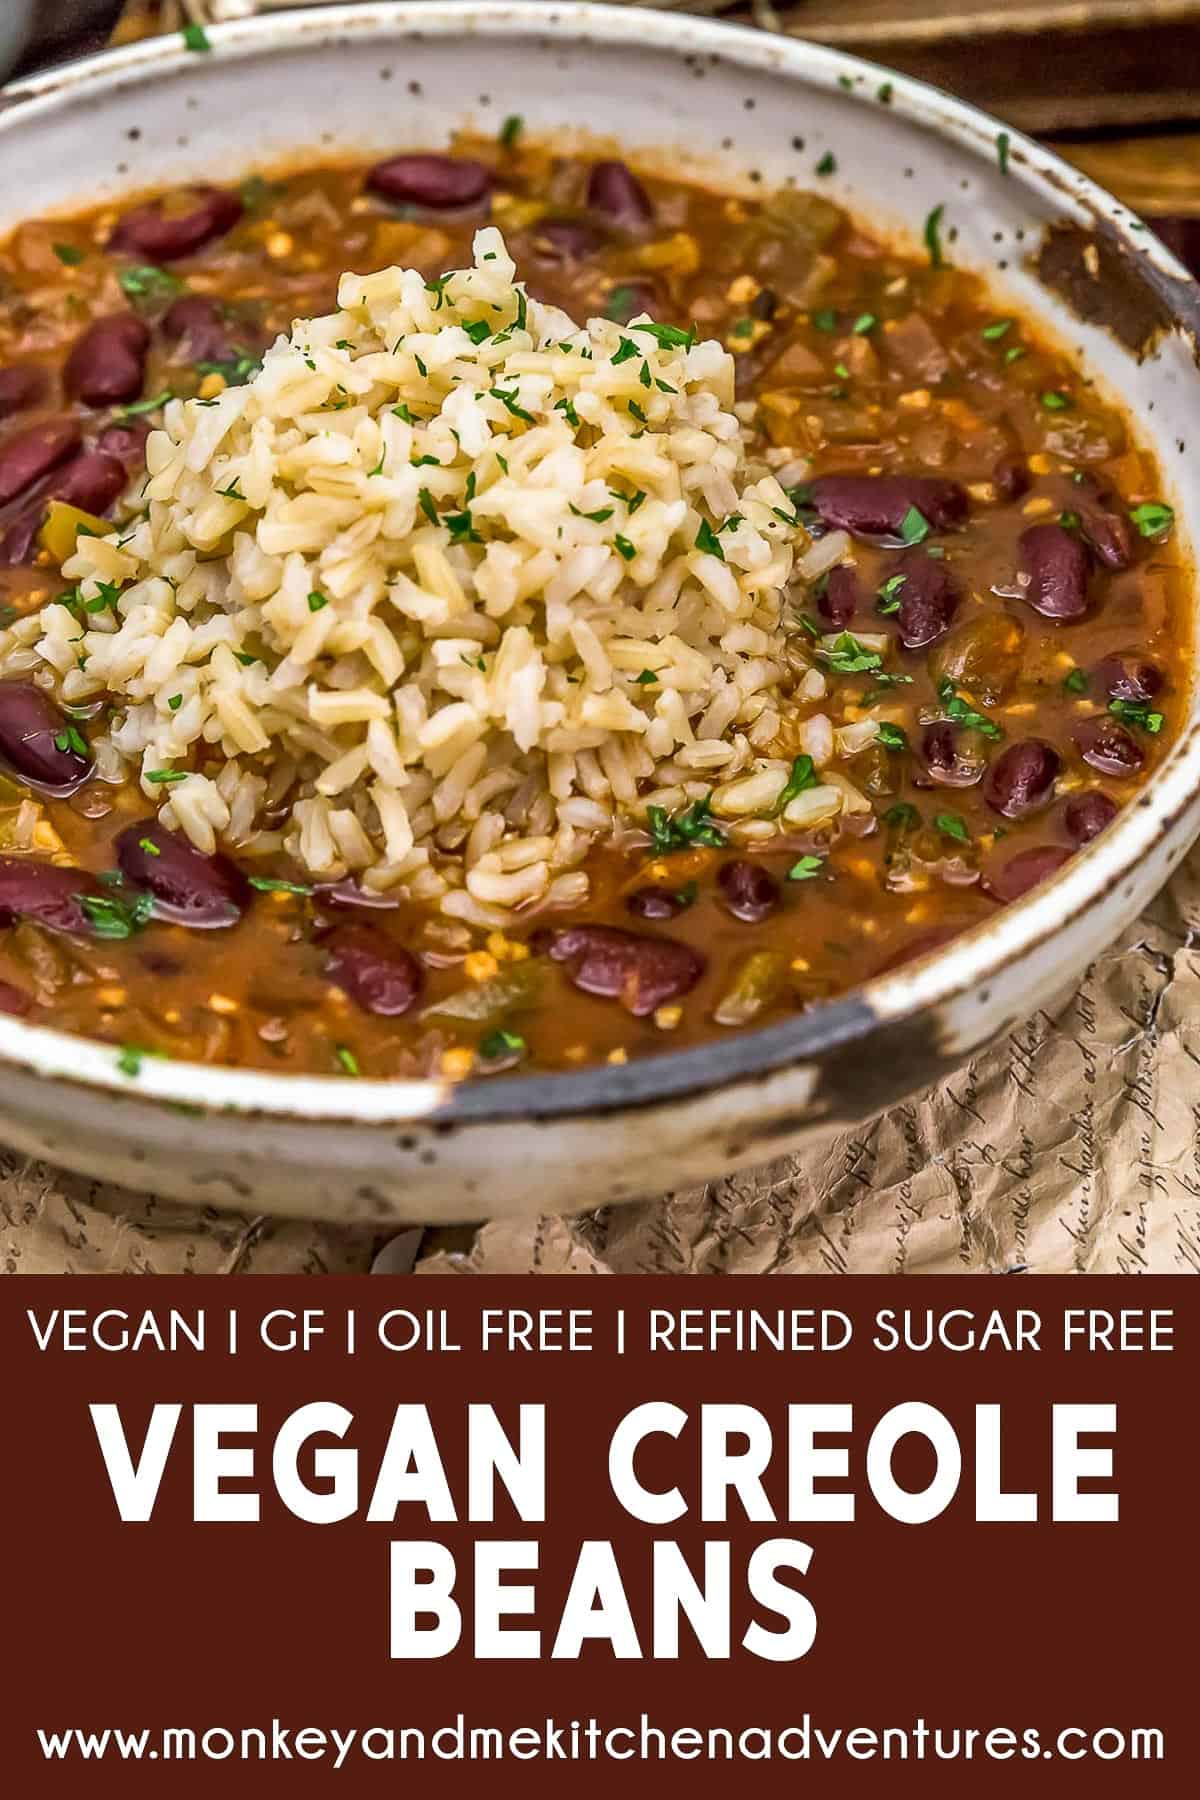 Vegan Creole Beans with text description